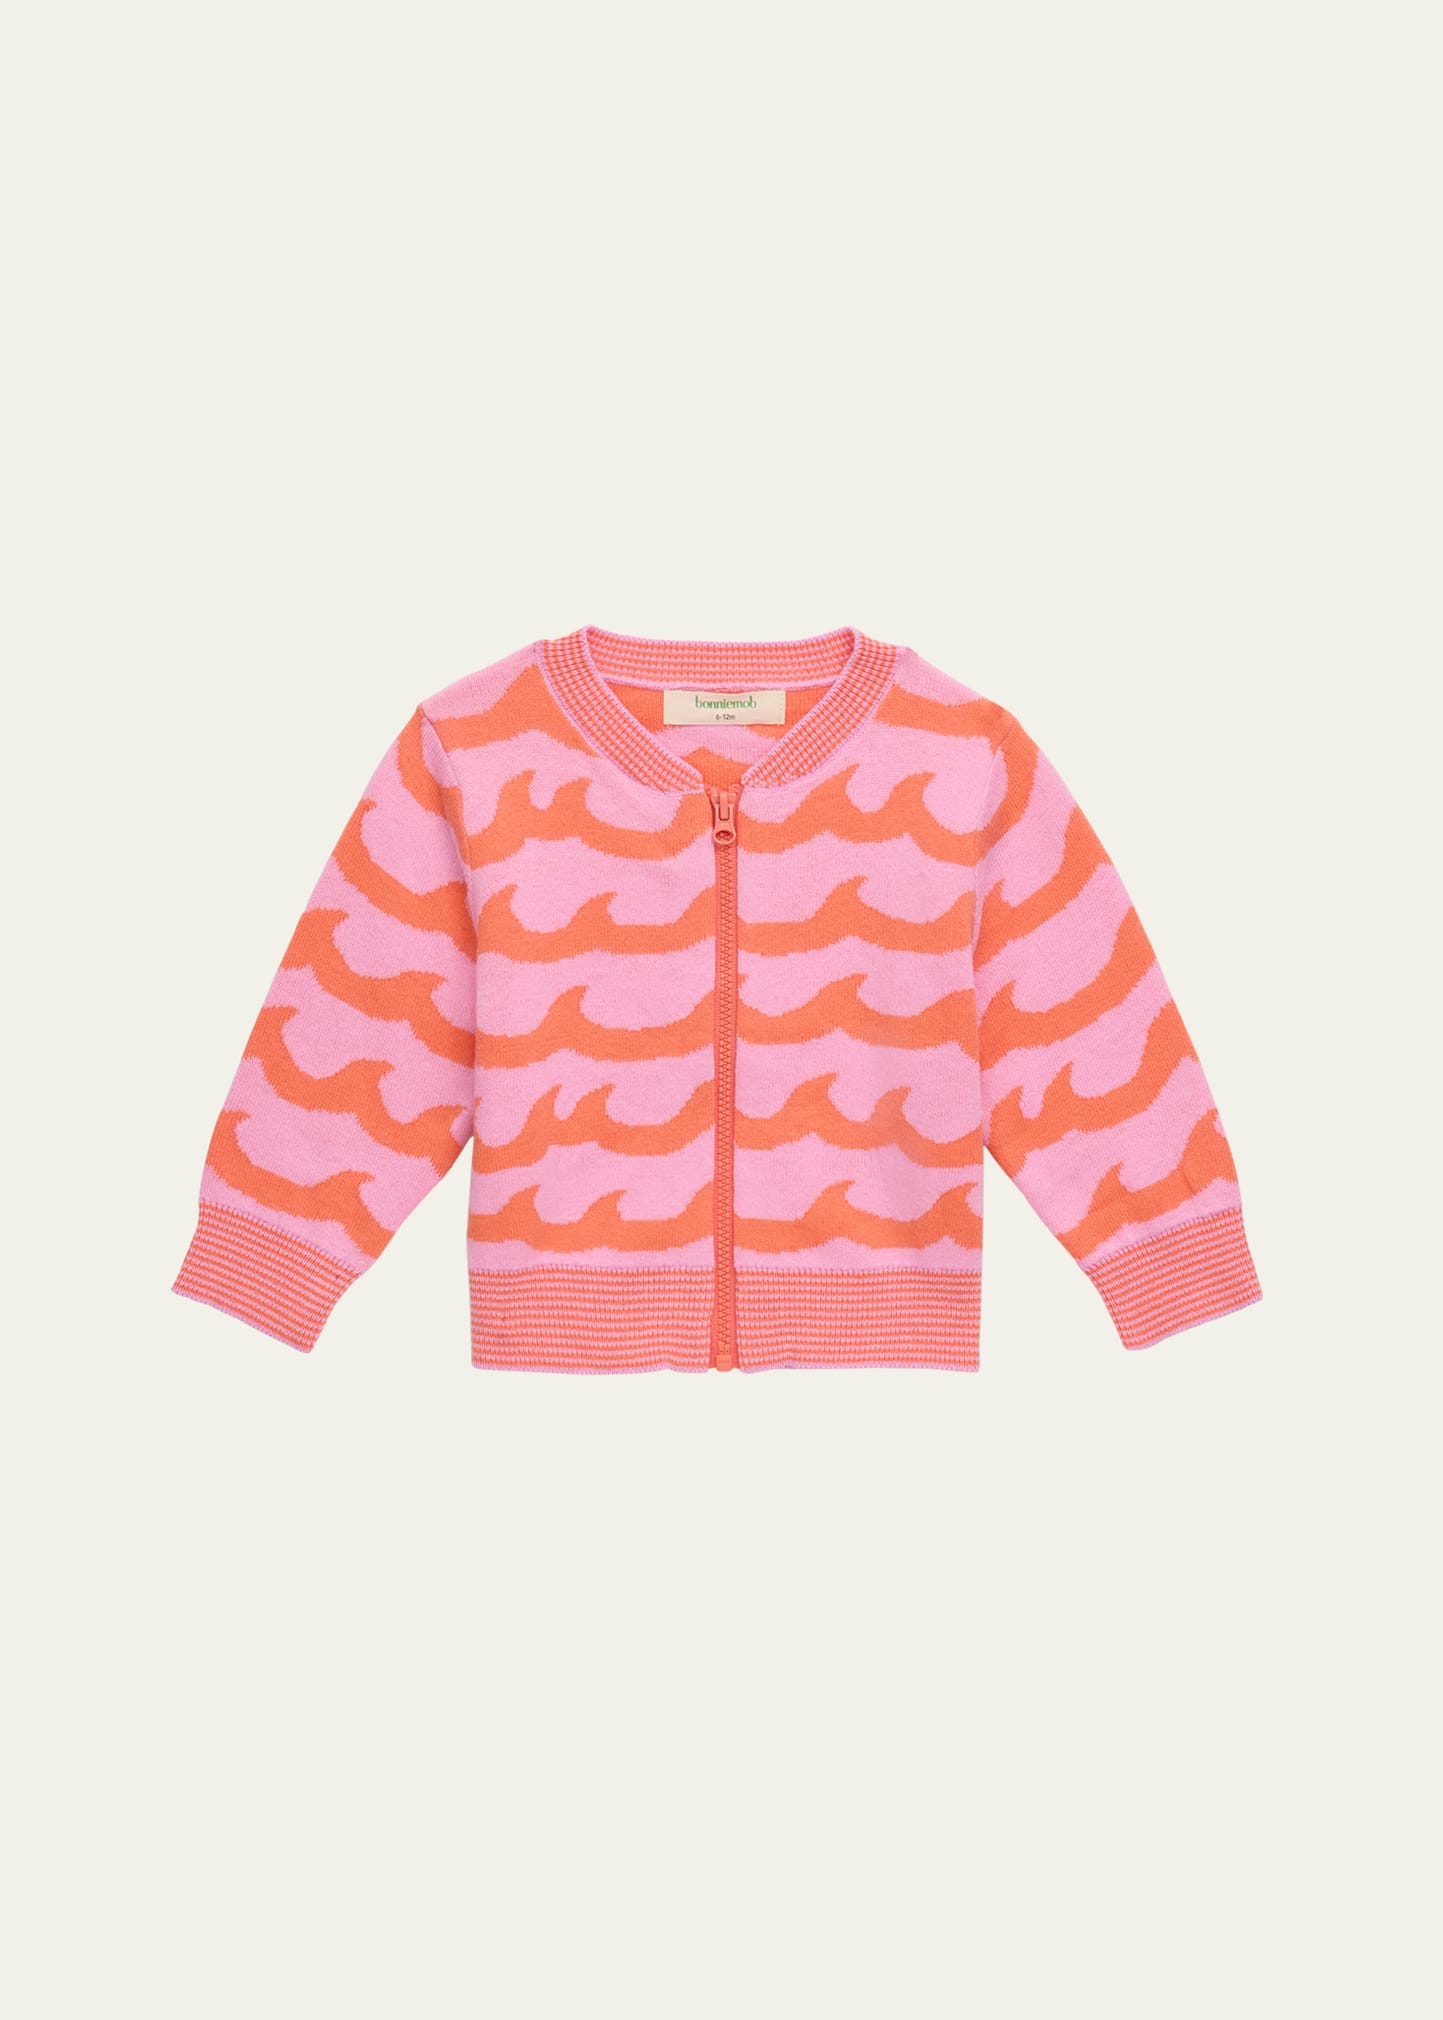 Bonniemob Kids' Girl's Waves Printed Cardigan In Pink